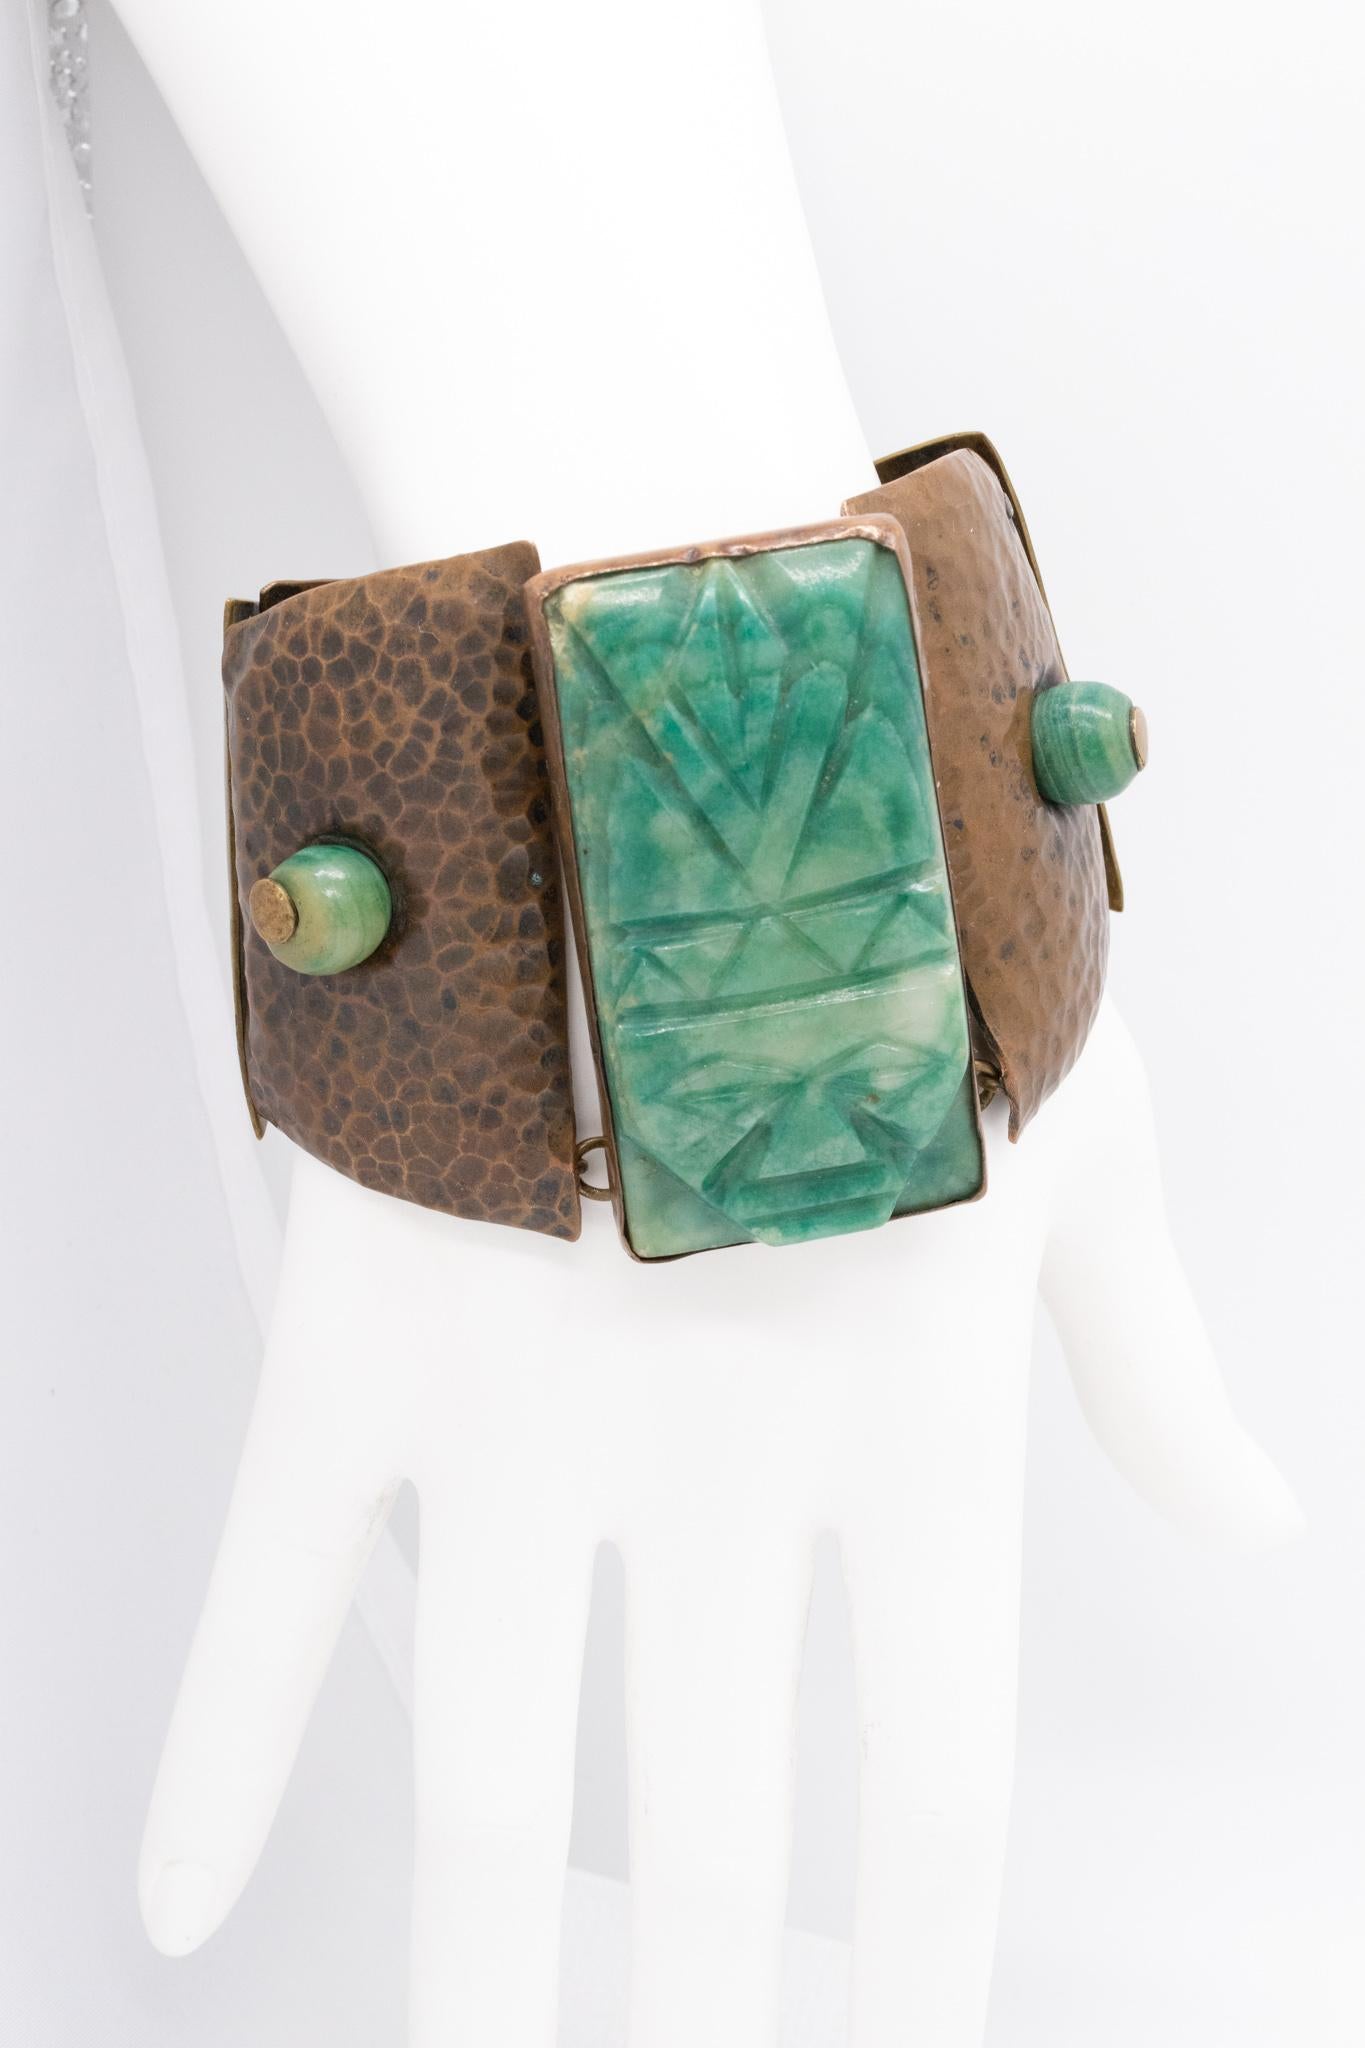 Statement-Armband entworfen von Casa De Maya

Ein seltenes Vintage-Stück, das in der Mitte des Jahrhunderts, um 1950, in Mexiko entstand. Gefertigt im Atelier von Casa De Maya aus gemischten Metallen wie gehämmertem Kupfer und poliertem Messing.